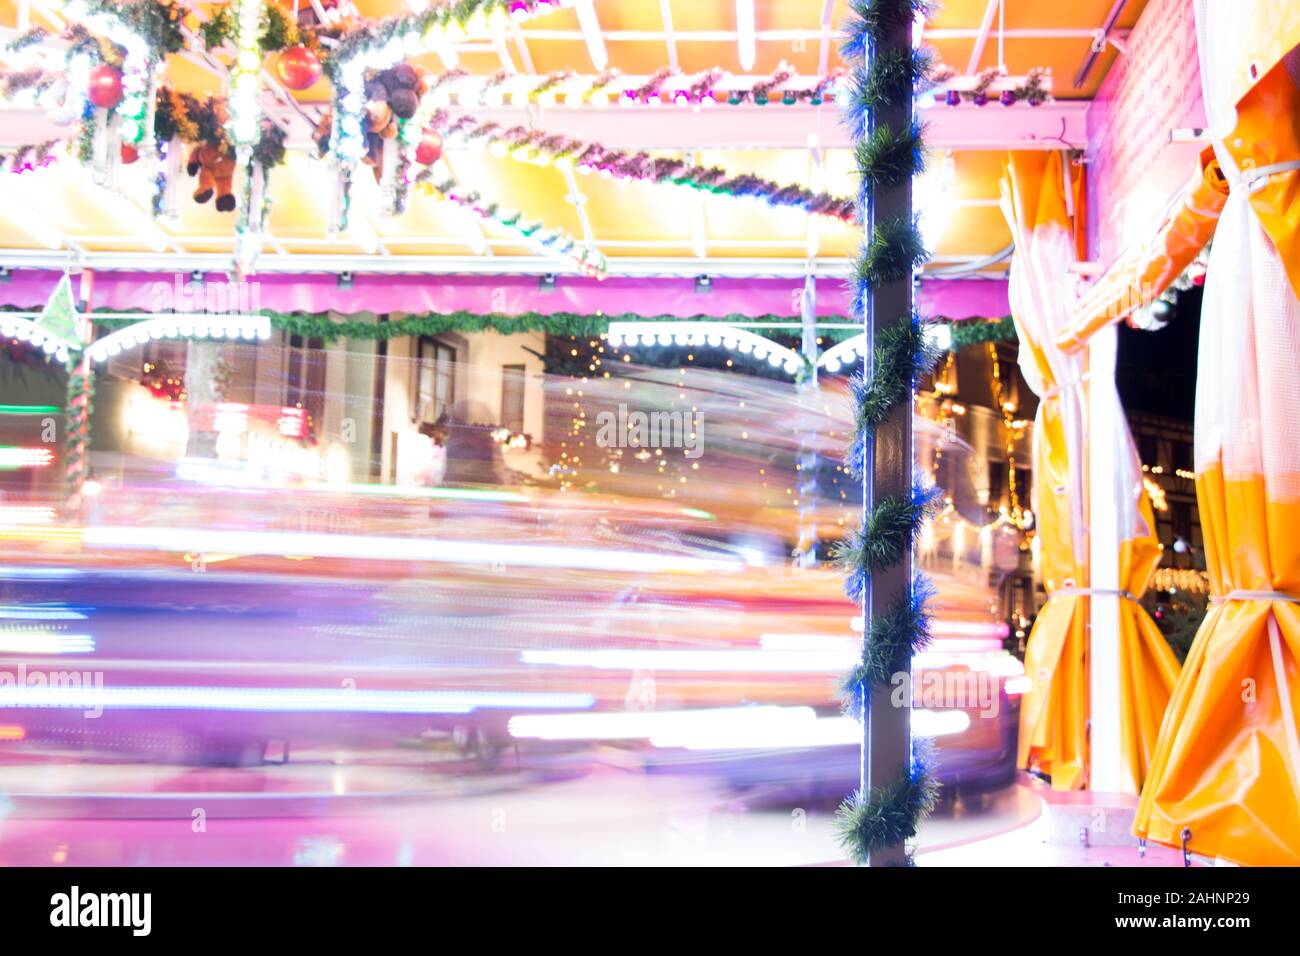 Carrusel de colores en el parque de atracciones tomada con una velocidad de obturación lenta Foto de stock